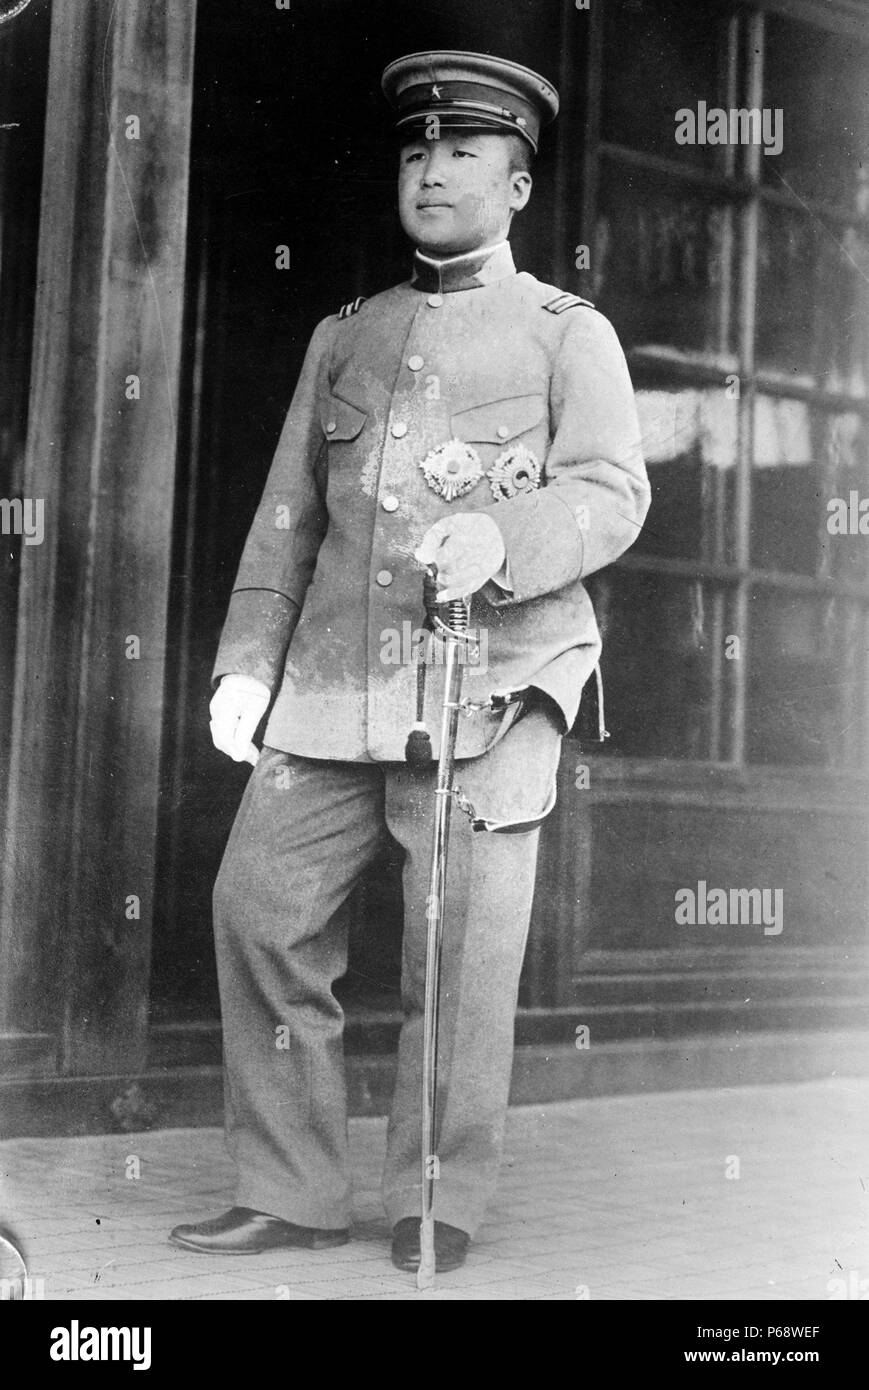 Koreanische Kronprinz Yi Eun (1897-1970) in der japanischen kaiserlichen Armee Uniform. Yi Eun war der 28 Leiter der koreanischen Imperial House, eine Kaiserliche Japanische Armee allgemein und der letzte Kronprinz von Korea. Stockfoto